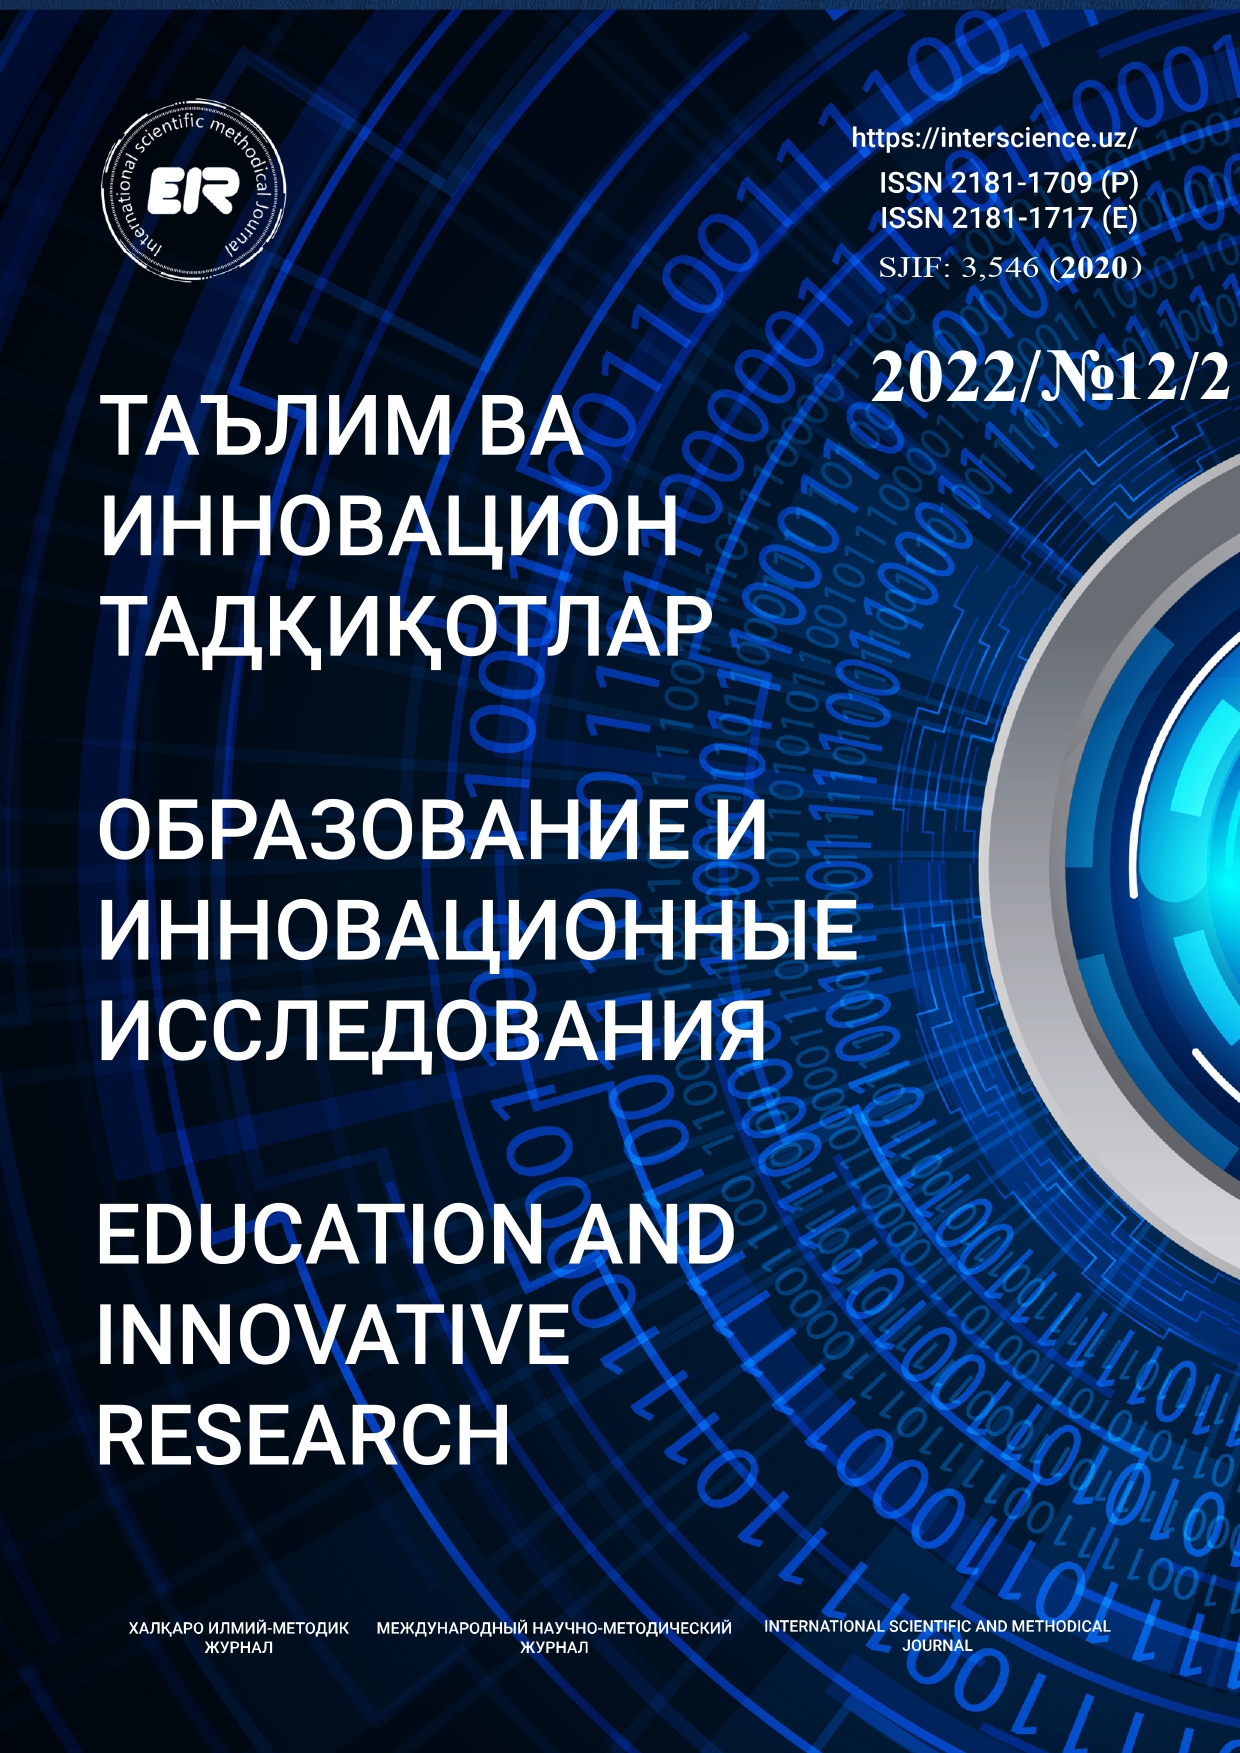 					Показать № 12/2 (2022): Образование и инновационные исследования
				